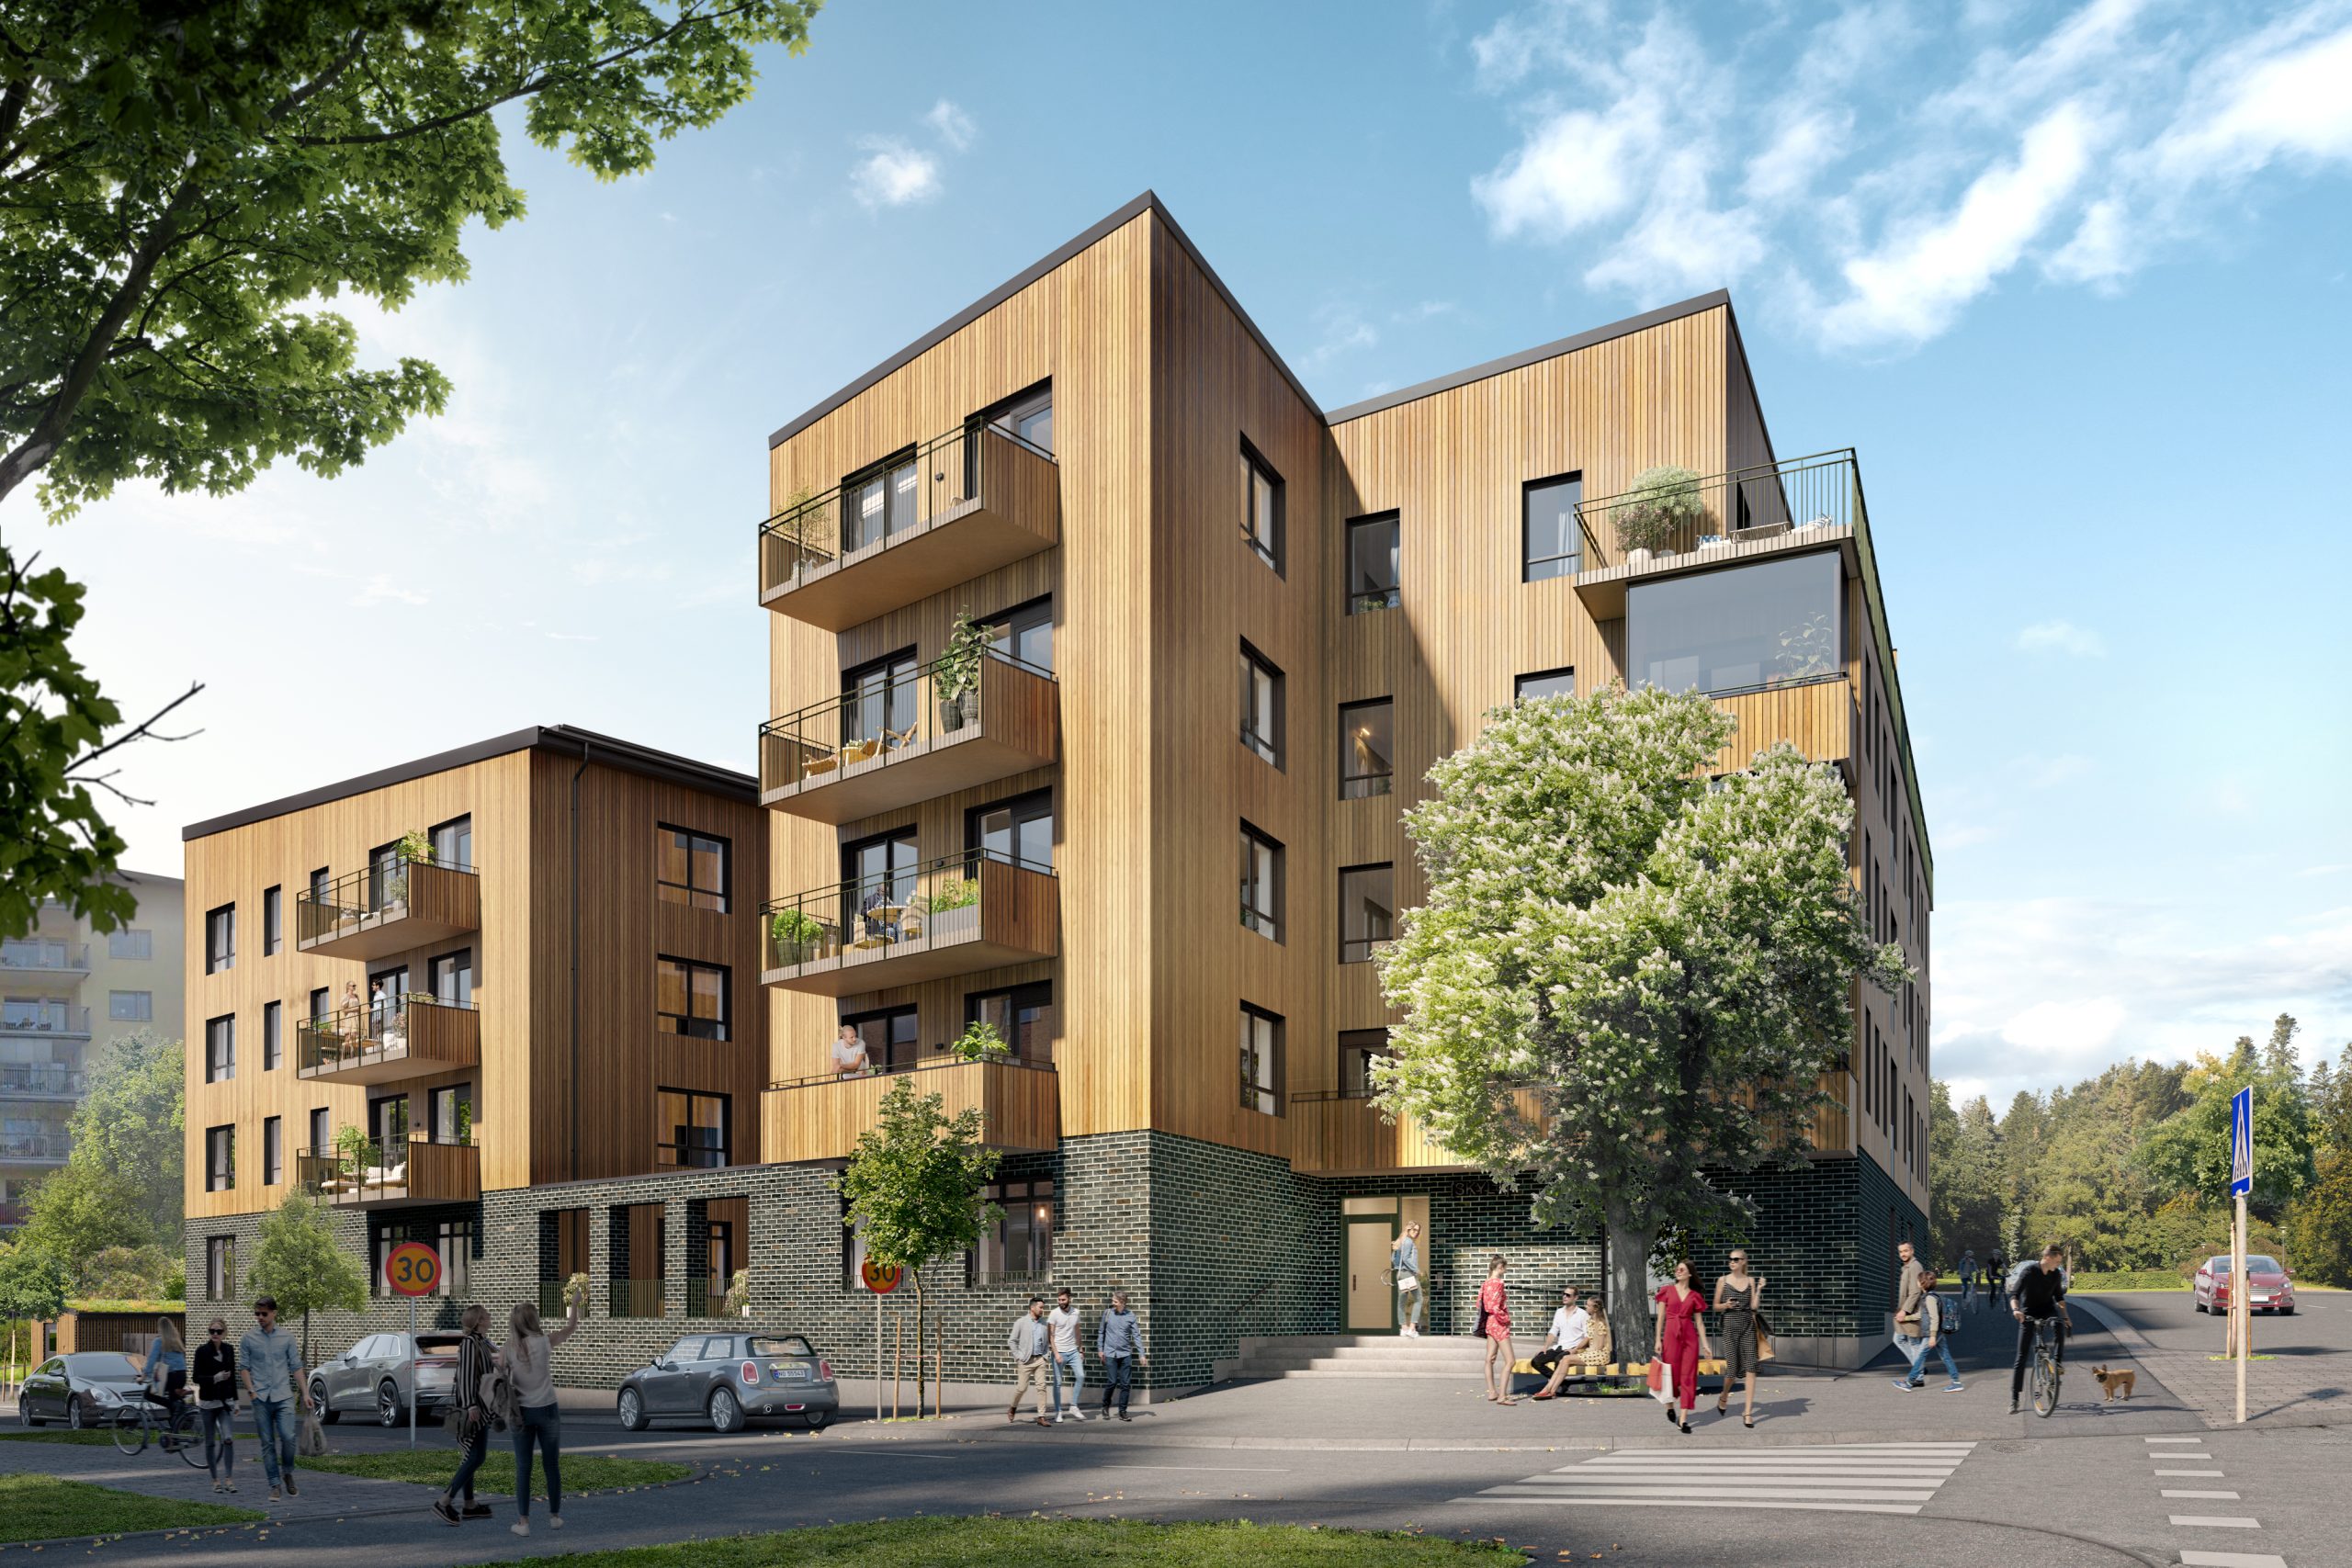 Fasaderna mot Sollentunavägen och Ugglevägen kombinerar stilren arkitektur med en asymmetrisk byggnadsvolym som skapar liv och variation längs gaturummet.